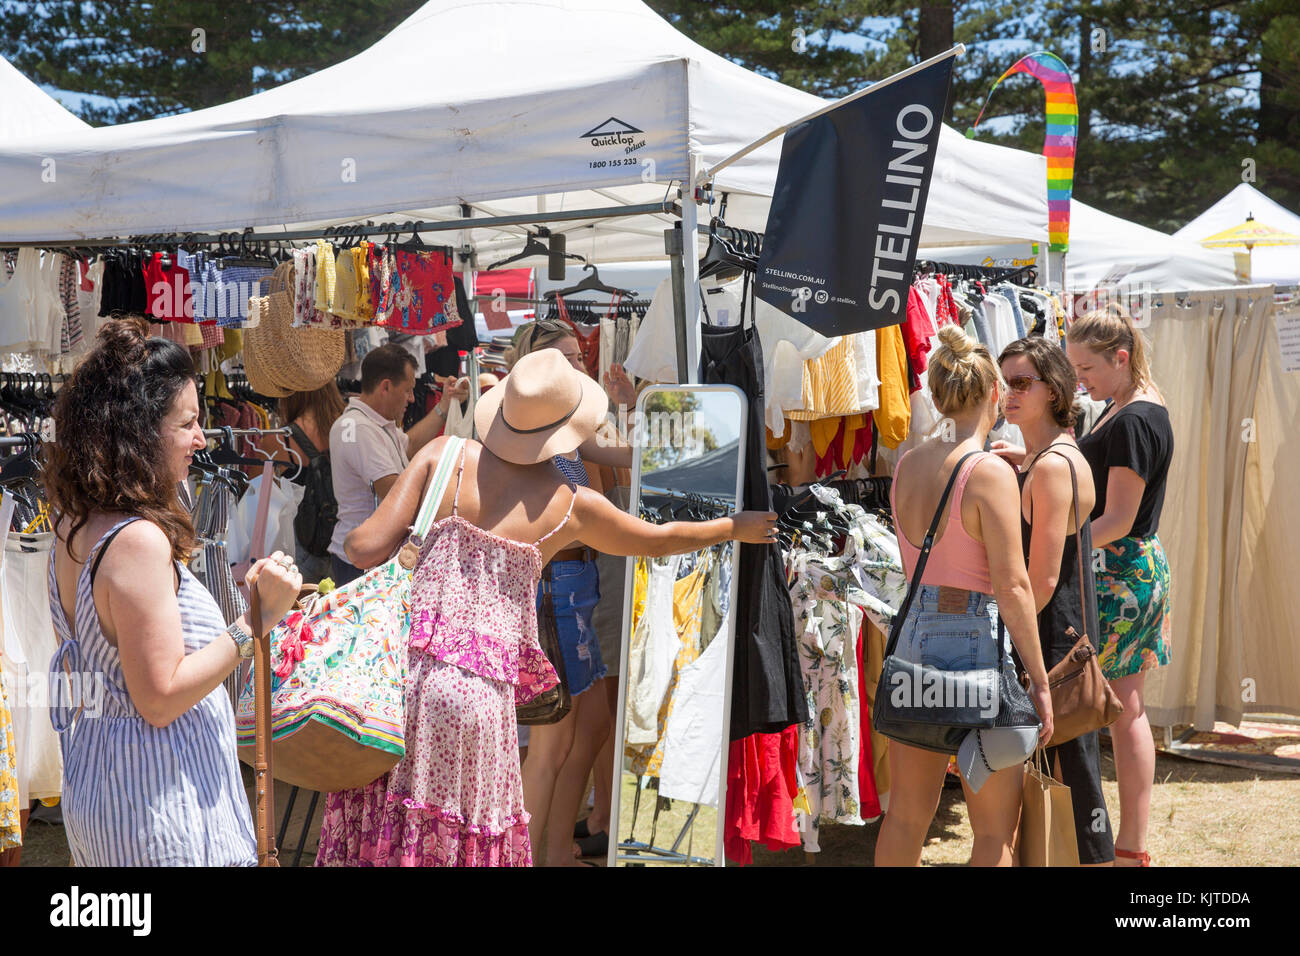 Meine Damen Einkaufsmöglichkeiten für Kleidung auf einem Markt auf Sydney  Northern Beaches Stall, Australien Stockfotografie - Alamy